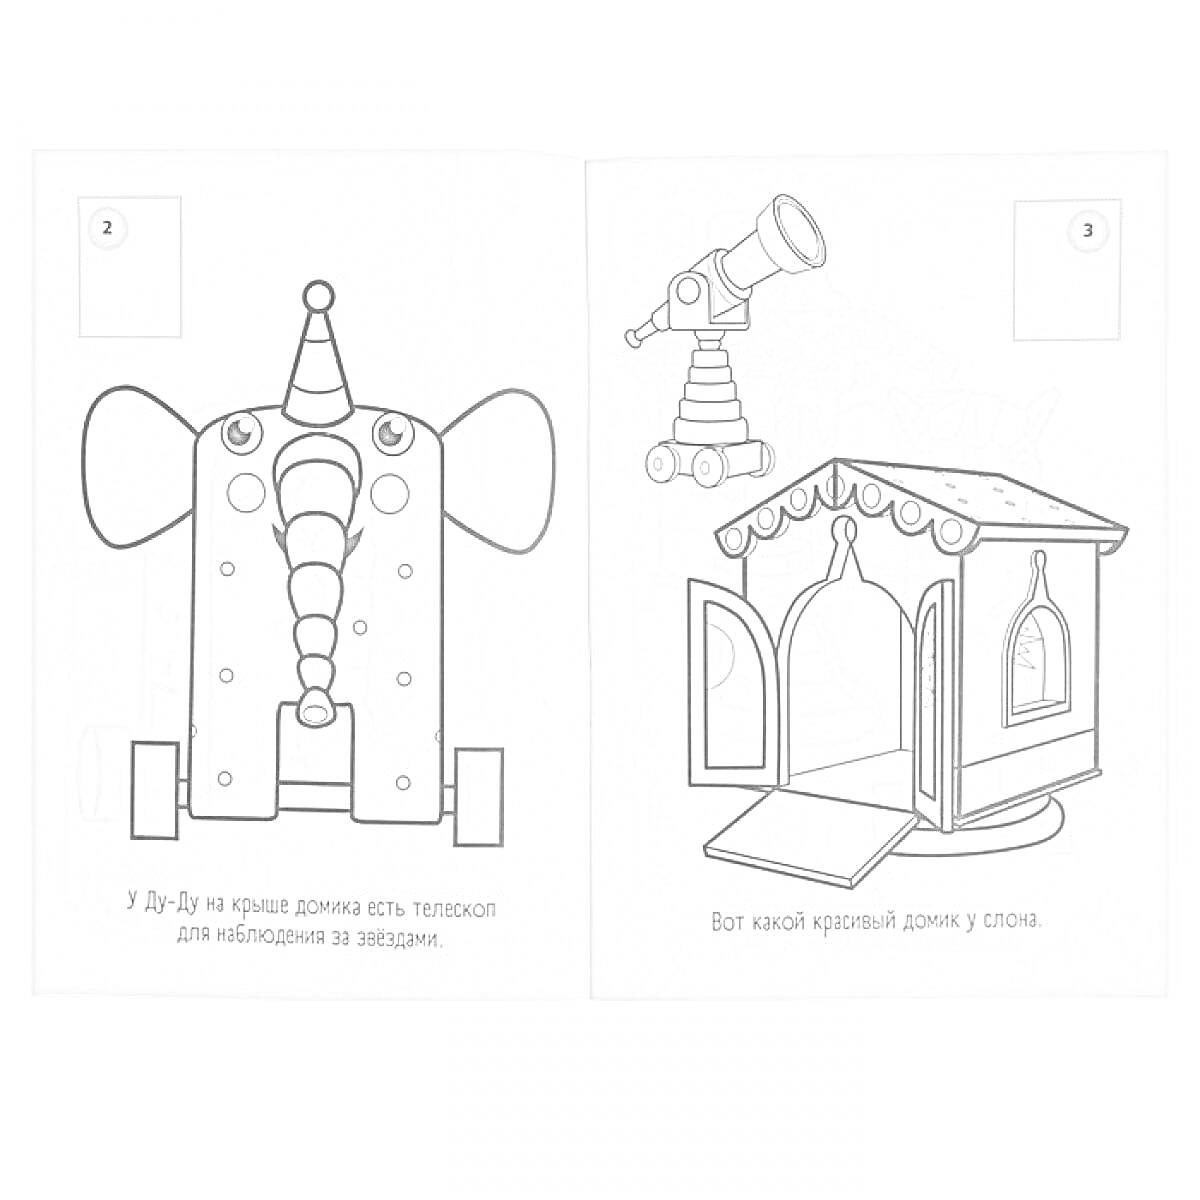 Раскраска Слоненок на колесиках с тележкой и домик с телескопом.